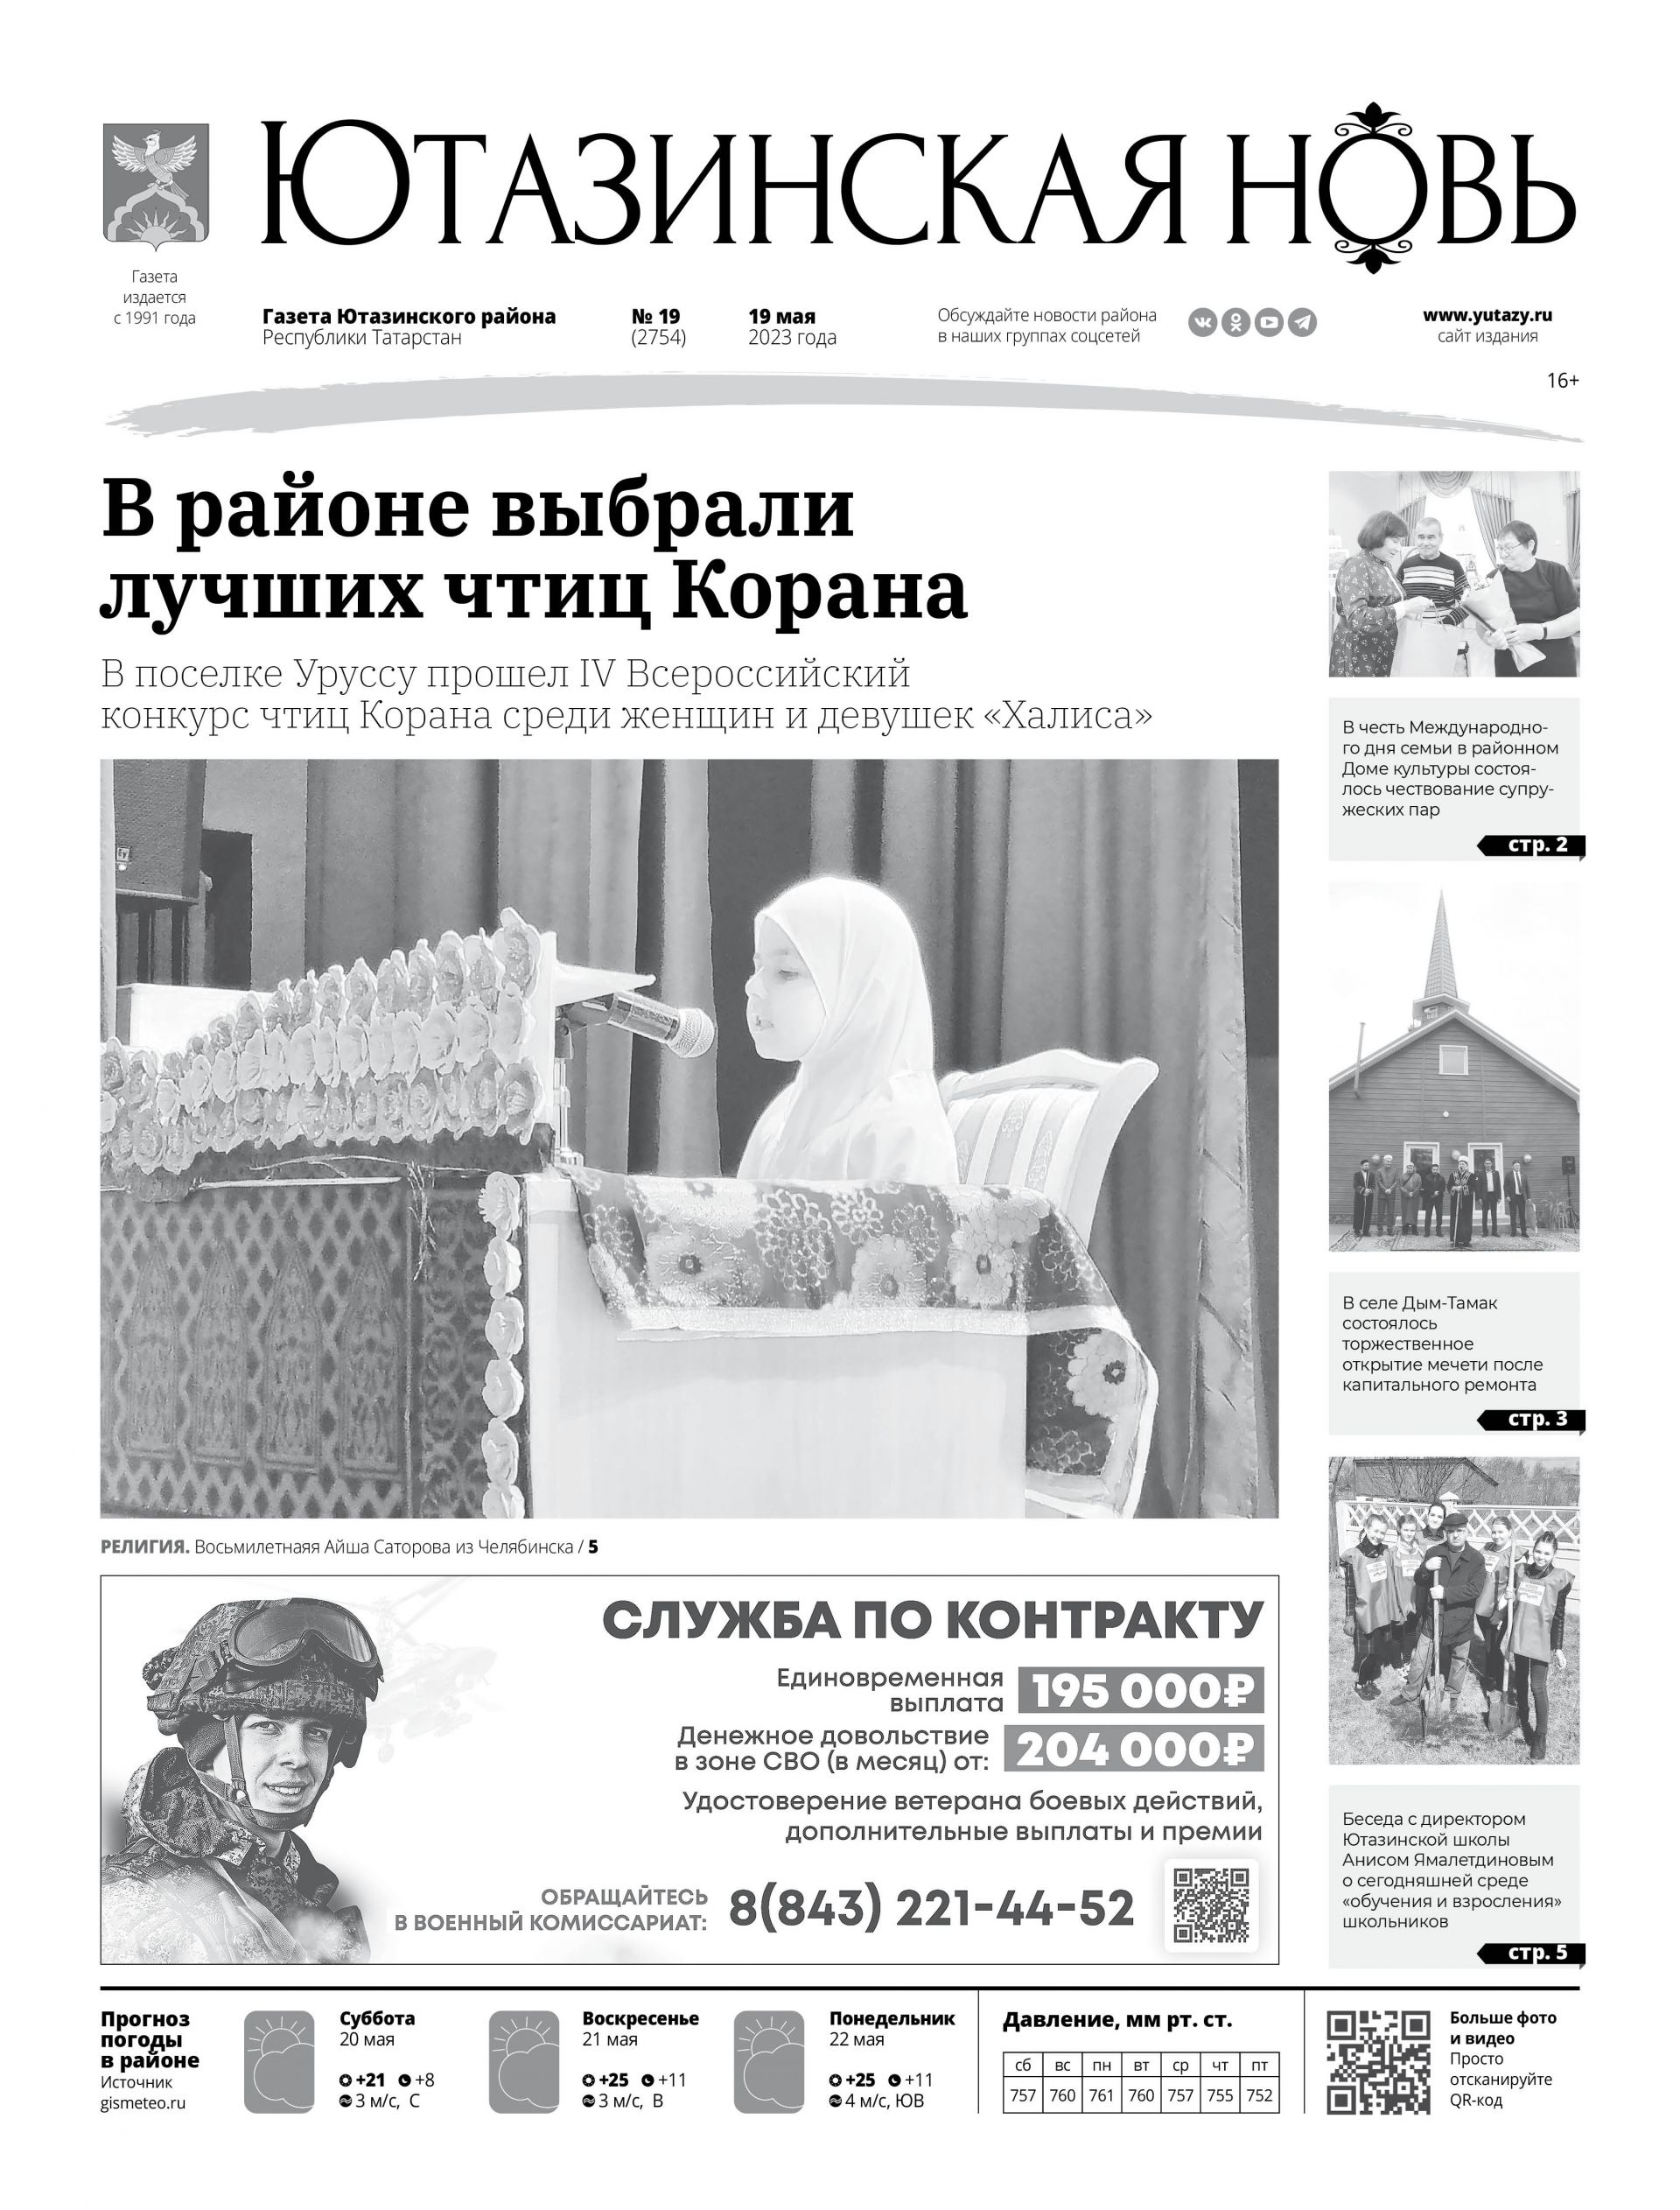 Сегодня мы и вся наша республика Татарстан отмечаем День печати